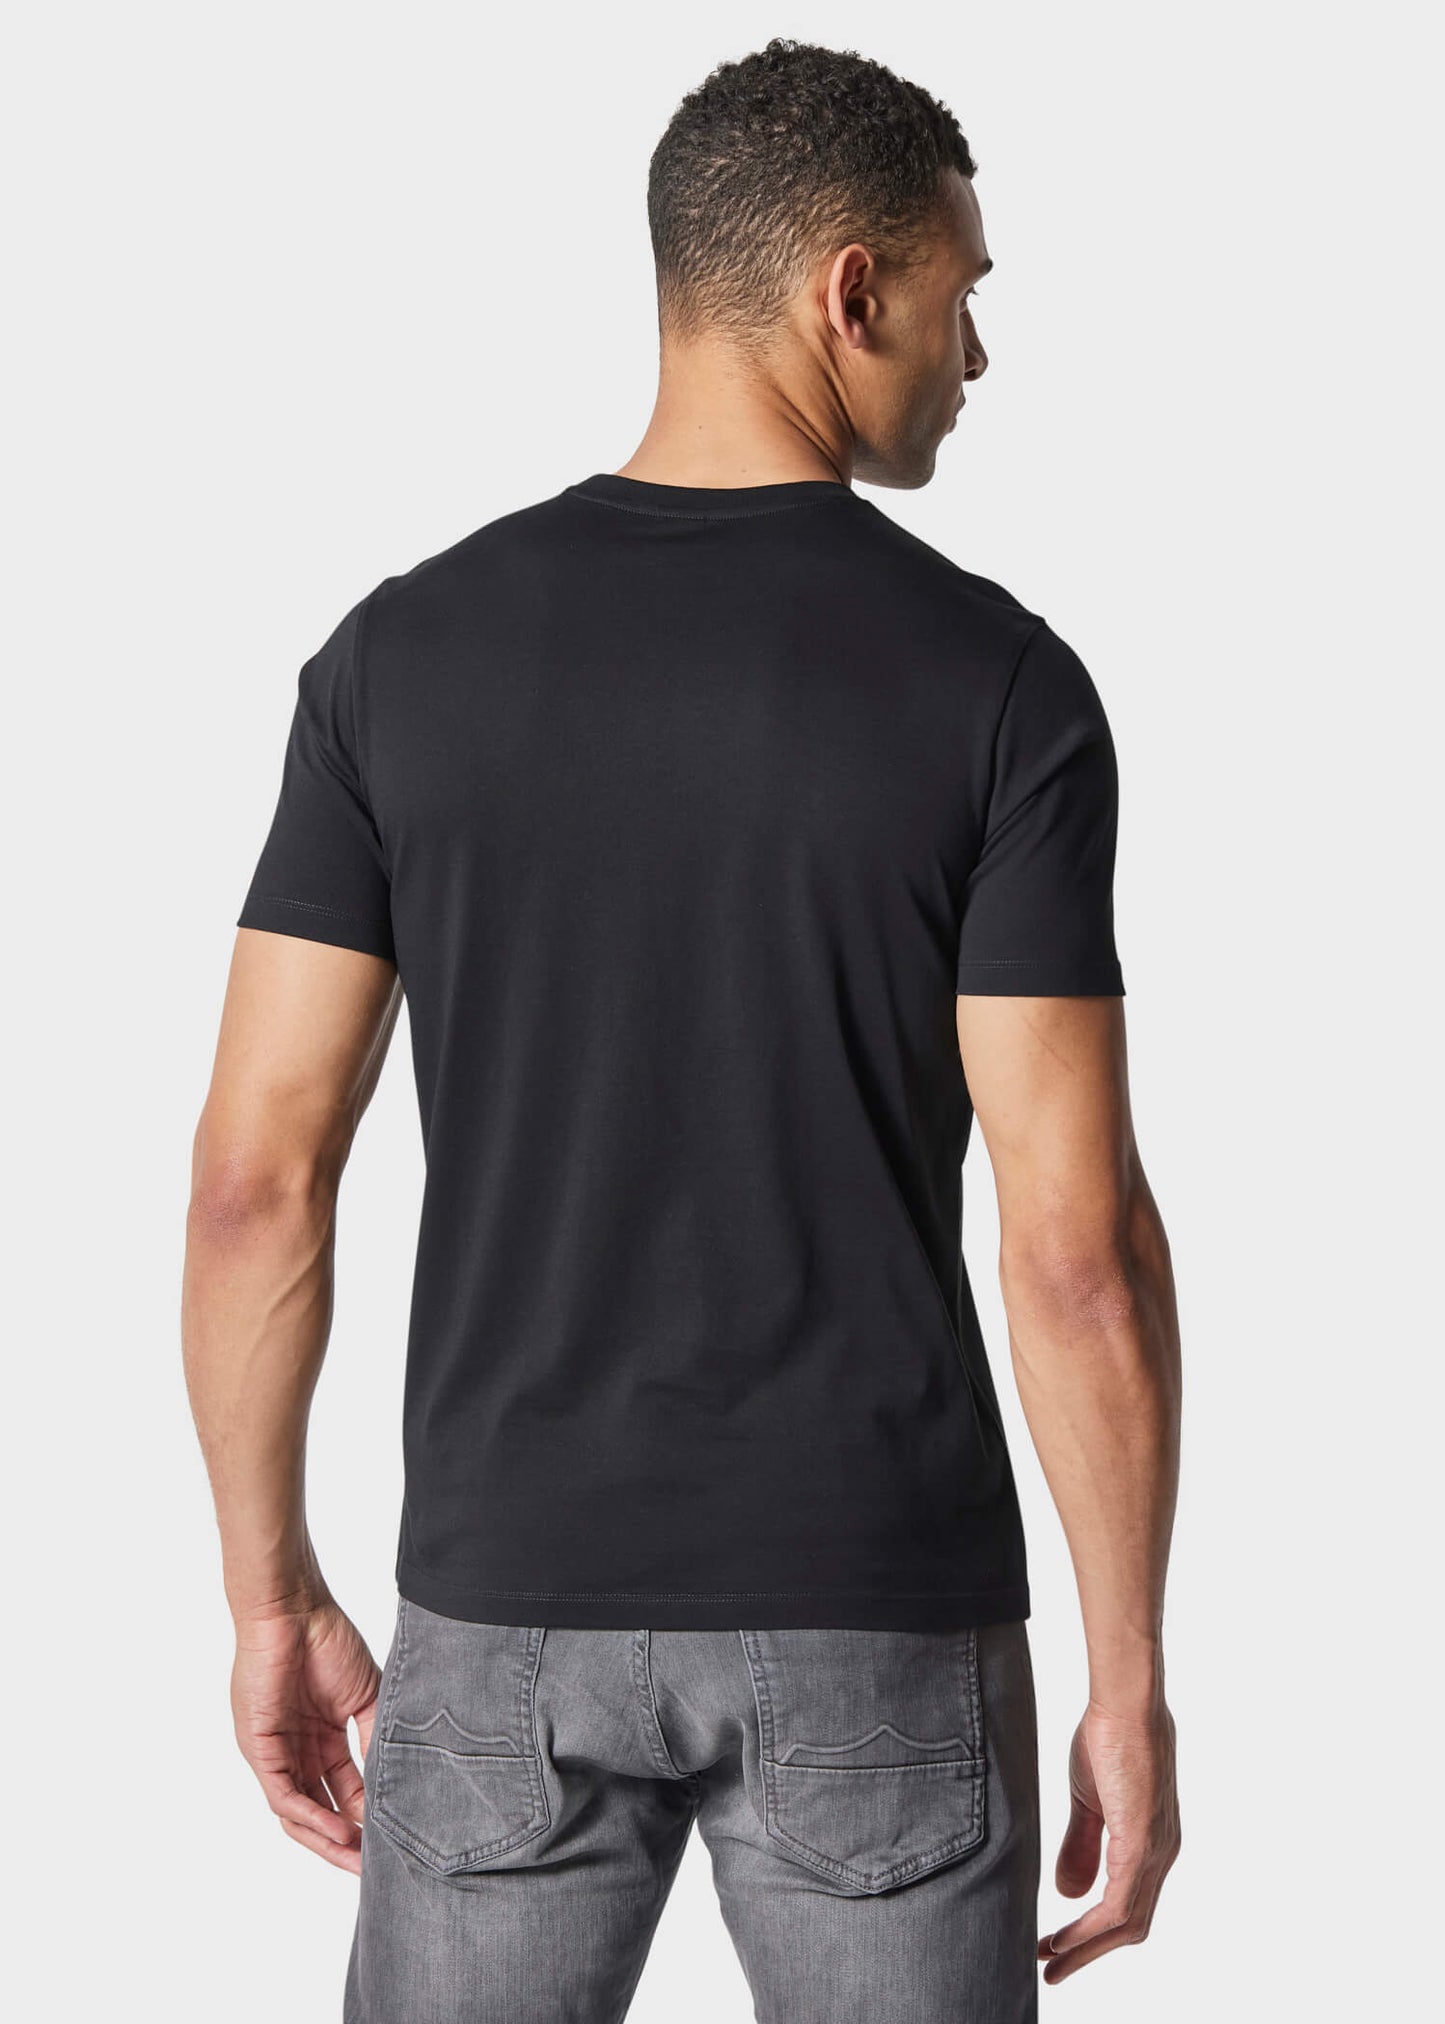 Yexley Black T-Shirt